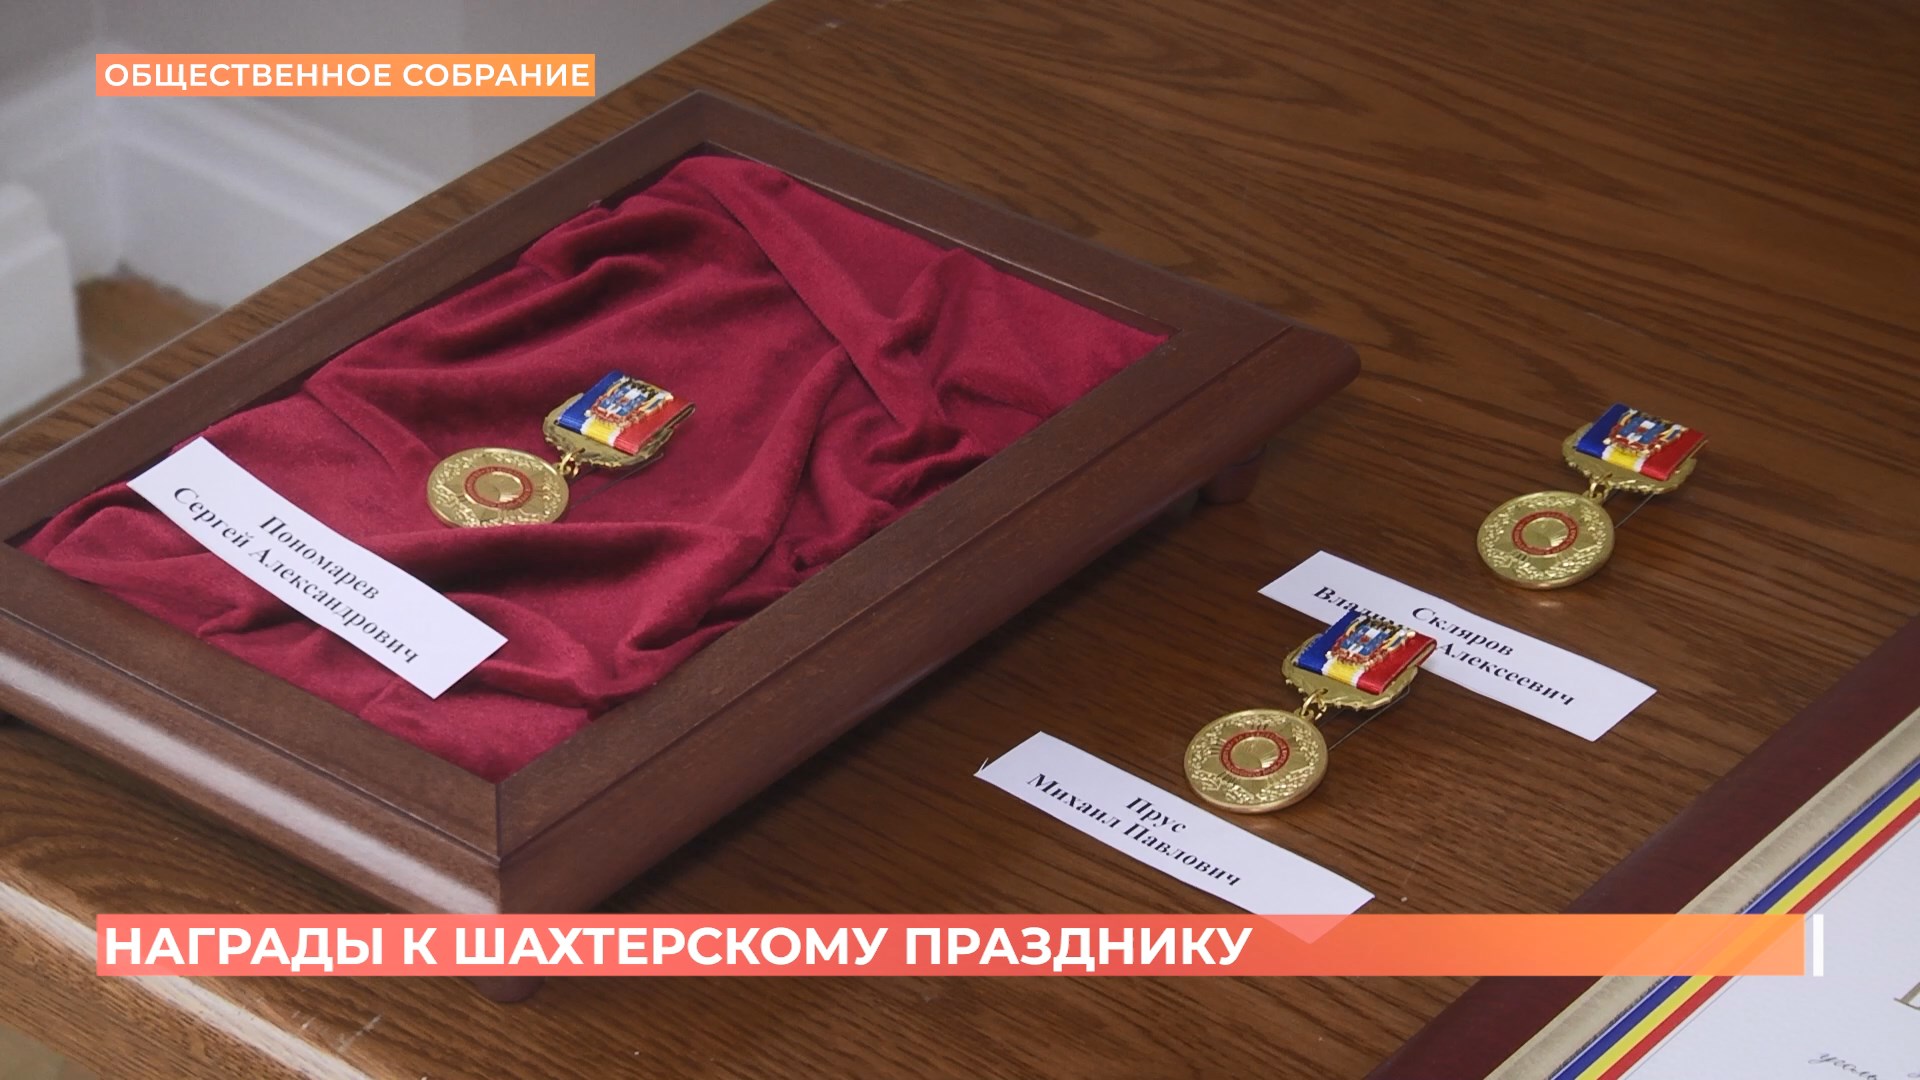 Губернатор вручил областные награды ко Дню шахтера